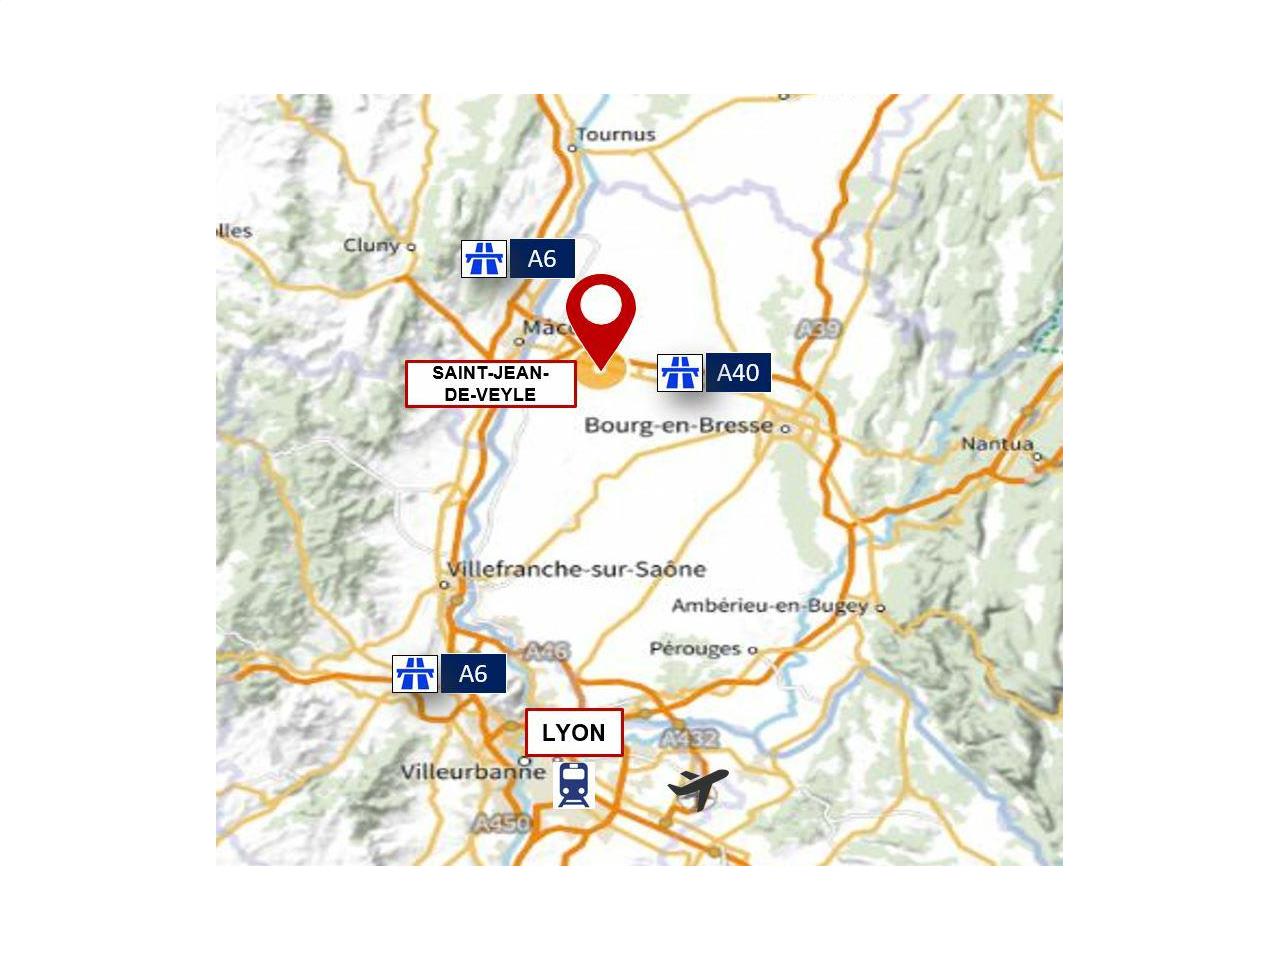 Location entrepôt classe a 31650m² Saint-Genis-sur-Menthon